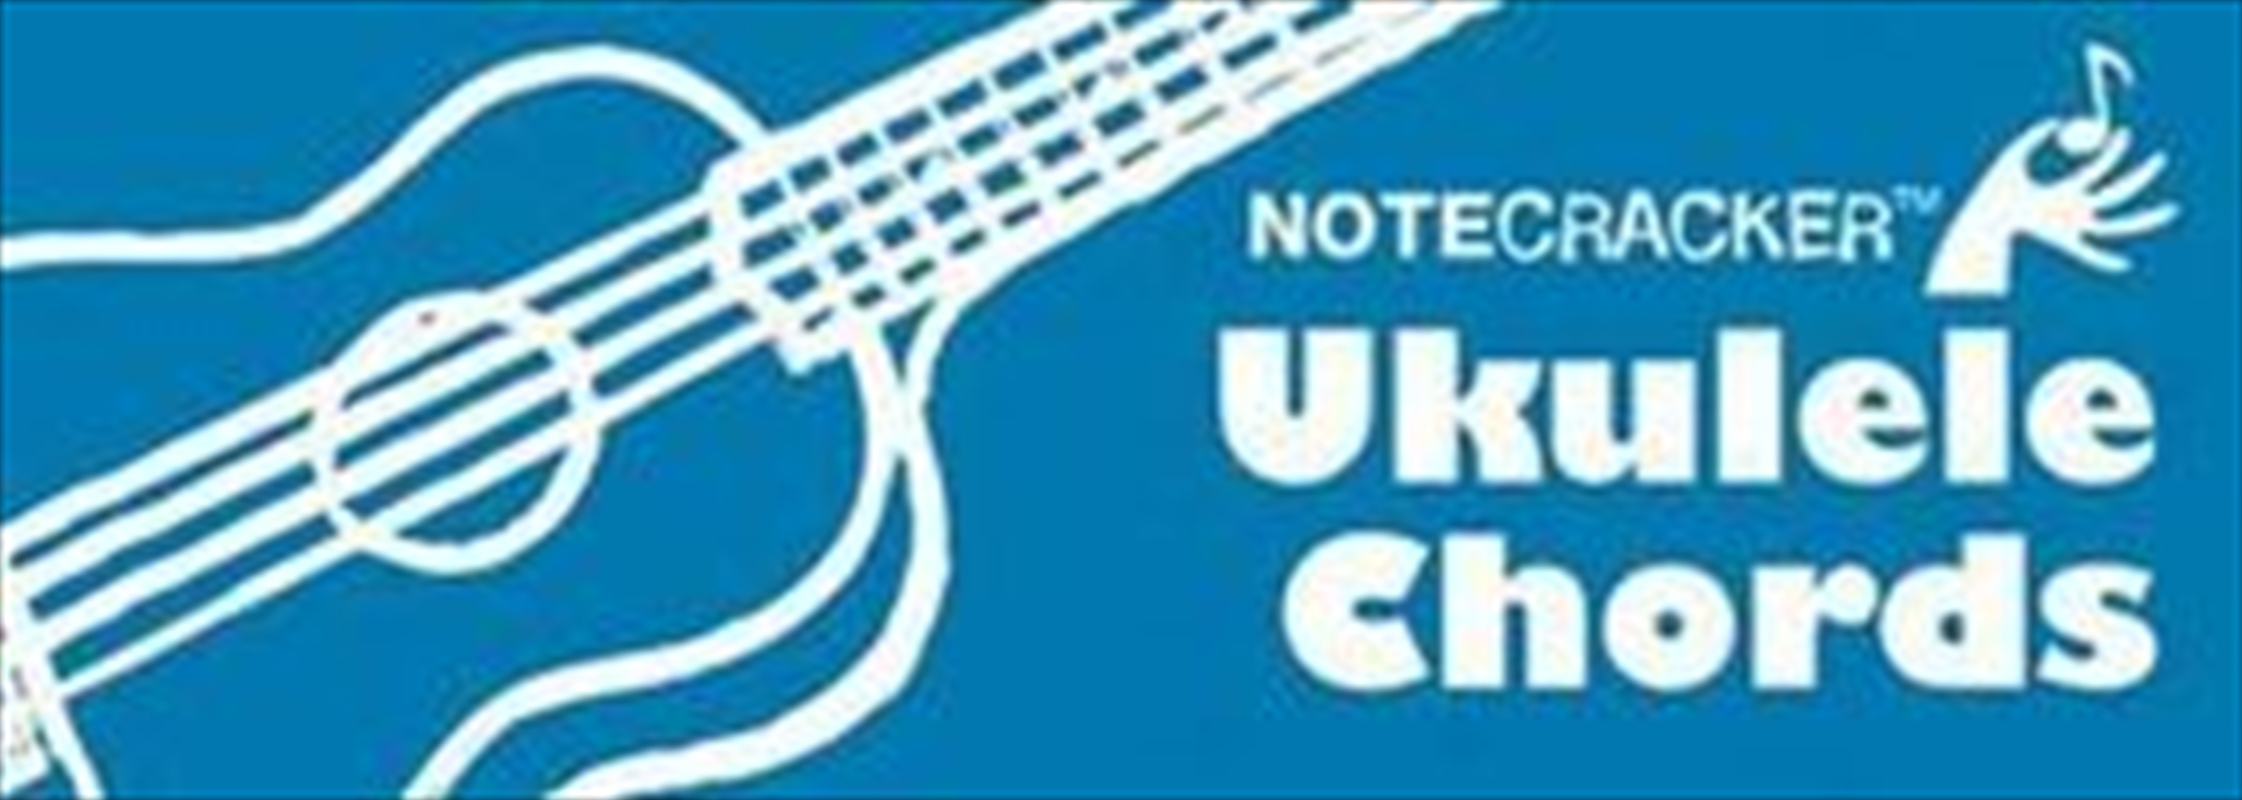 Notecracker Ukulele Chords/Product Detail/Reading